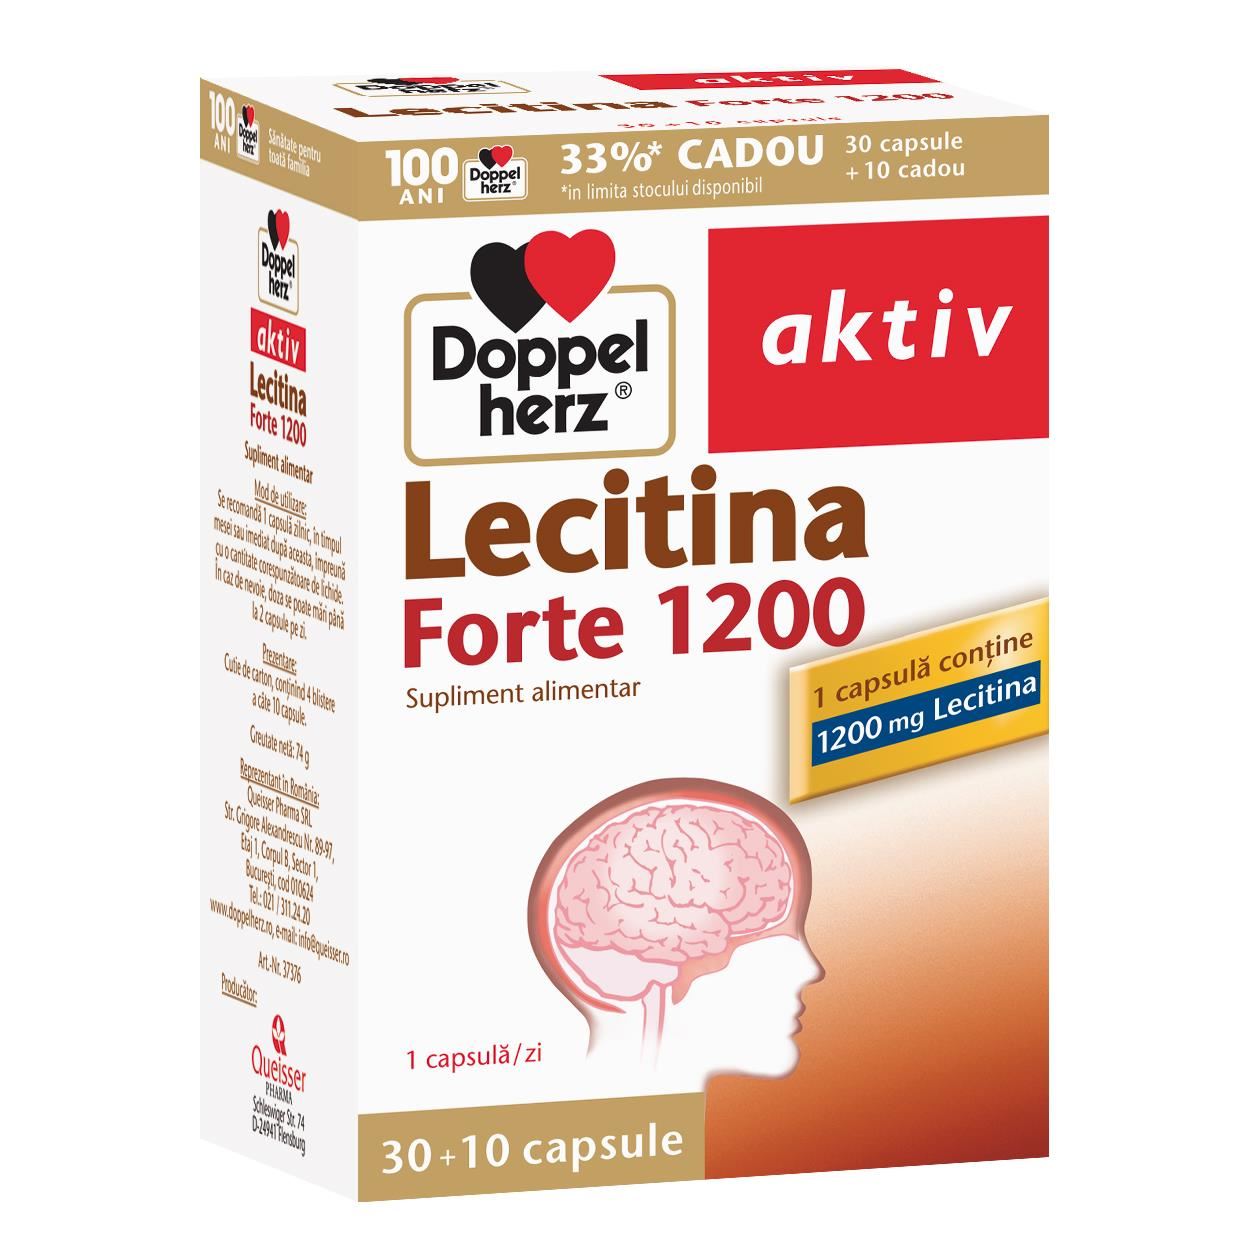 Lecitină Forte 1200, 30 + 10 comprimate CADOU, Doppelherz aktiv